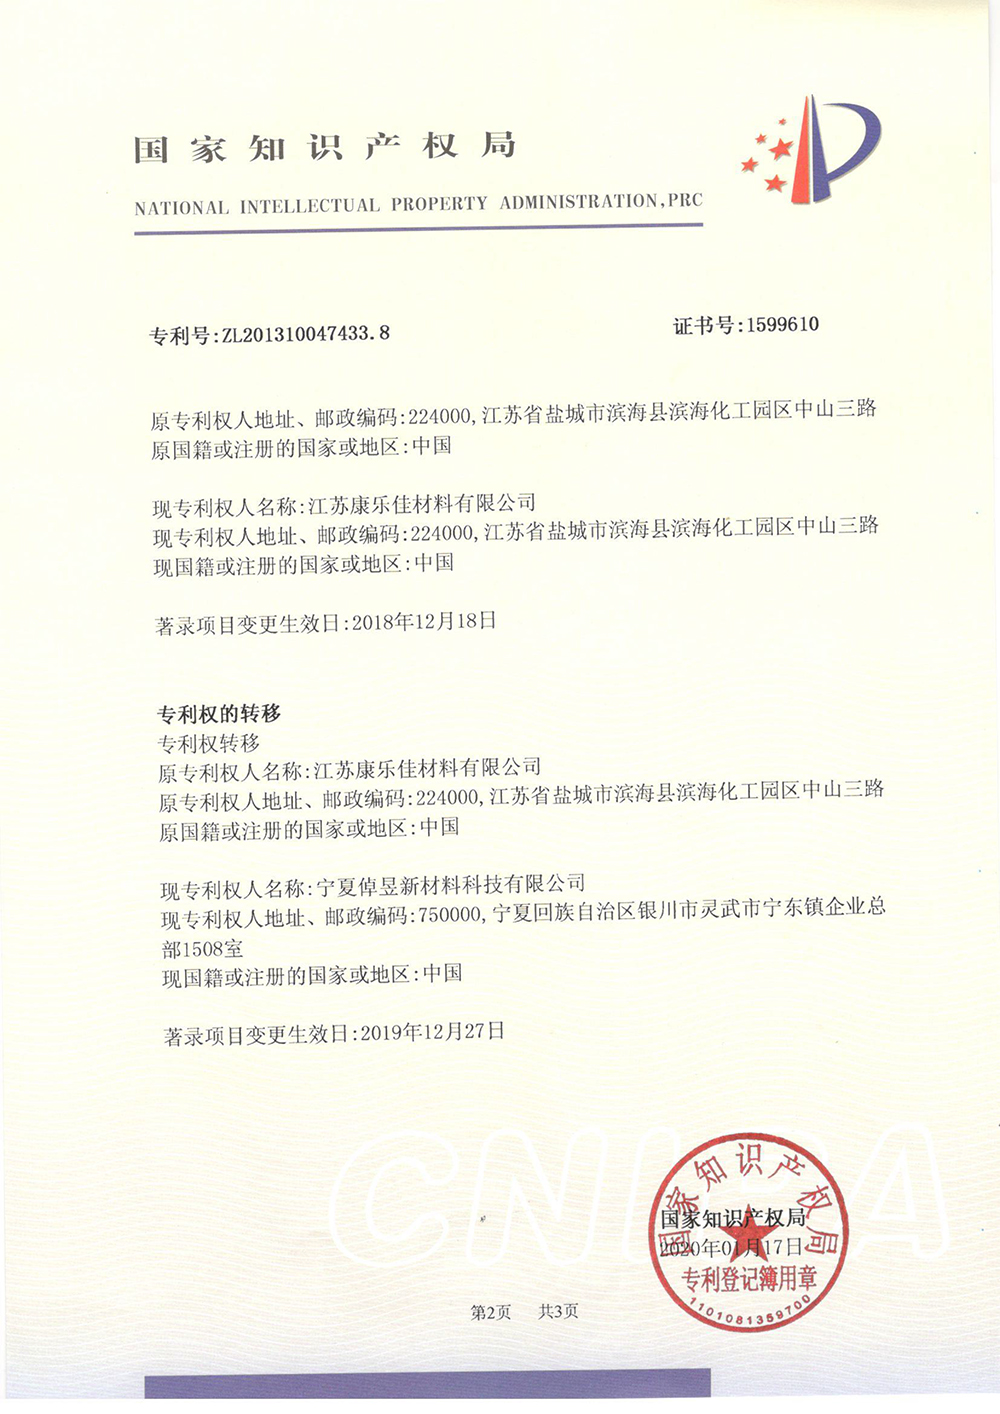 甲基咪唑的方法-专利登记薄-2_上海浩登材料股份有限公司